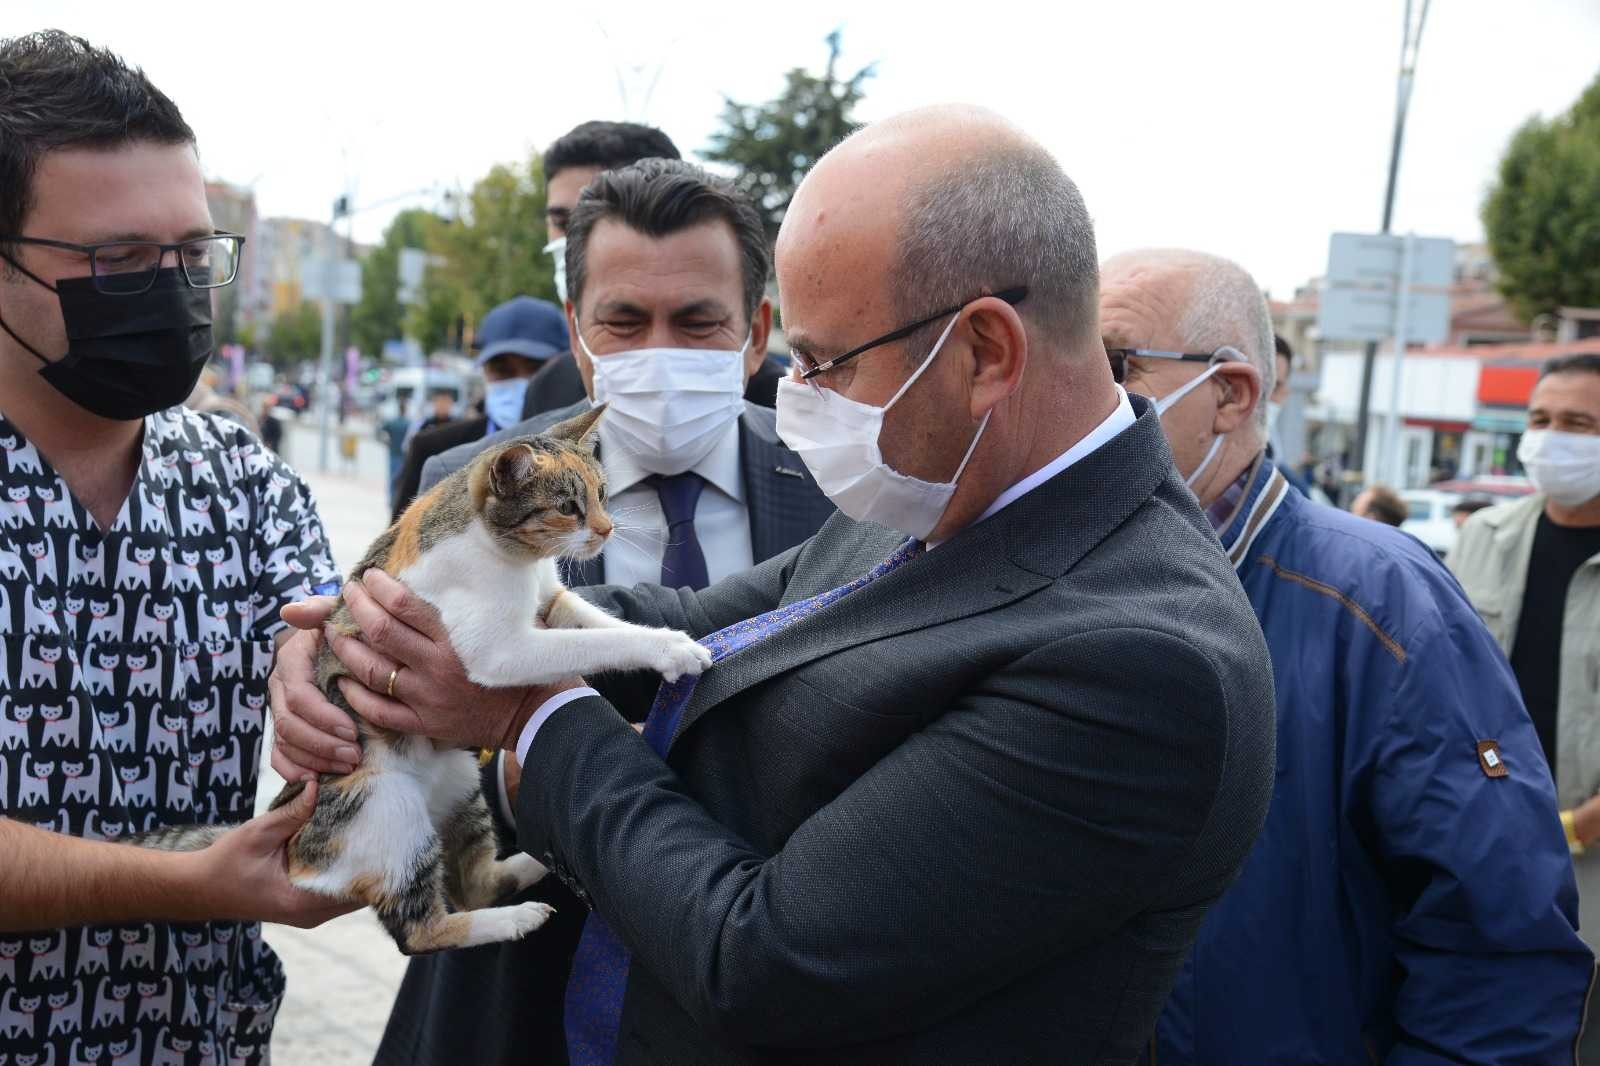 Belediye Başkanı Ekicioğlu: “Hayvanların korunması ve sahiplenilmesi insanlık görevidir” #kirsehir